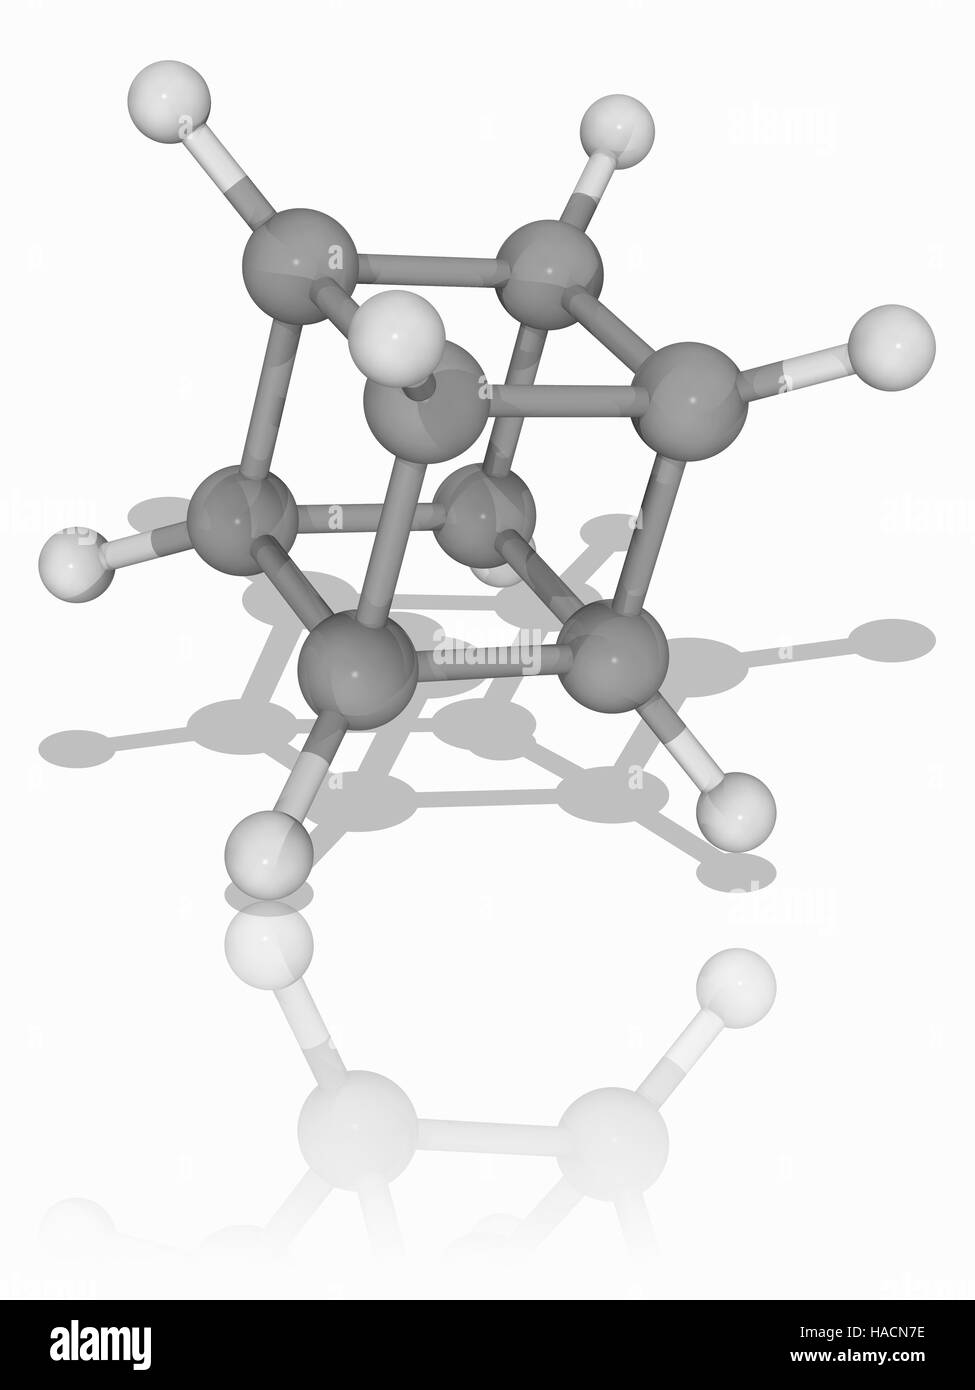 Cuban. Molekulares Modell des synthetischen Kohlenwasserstoff-Cuban (C8. H8). Dies ist ein Prismane, ein Kohlenwasserstoff, der eine prismenähnliche Polyeder, in diesem Fall einen Cube, einer der platonischen Körper bildet. Solche Moleküle sind für ihre Anwendungsmöglichkeiten in der Medizin und Nanotechnologie entwickelt. Atome als Kugeln dargestellt werden und sind farblich gekennzeichnet: Kohlenstoff (grau) und Wasserstoff (weiß). Abbildung. Stockfoto